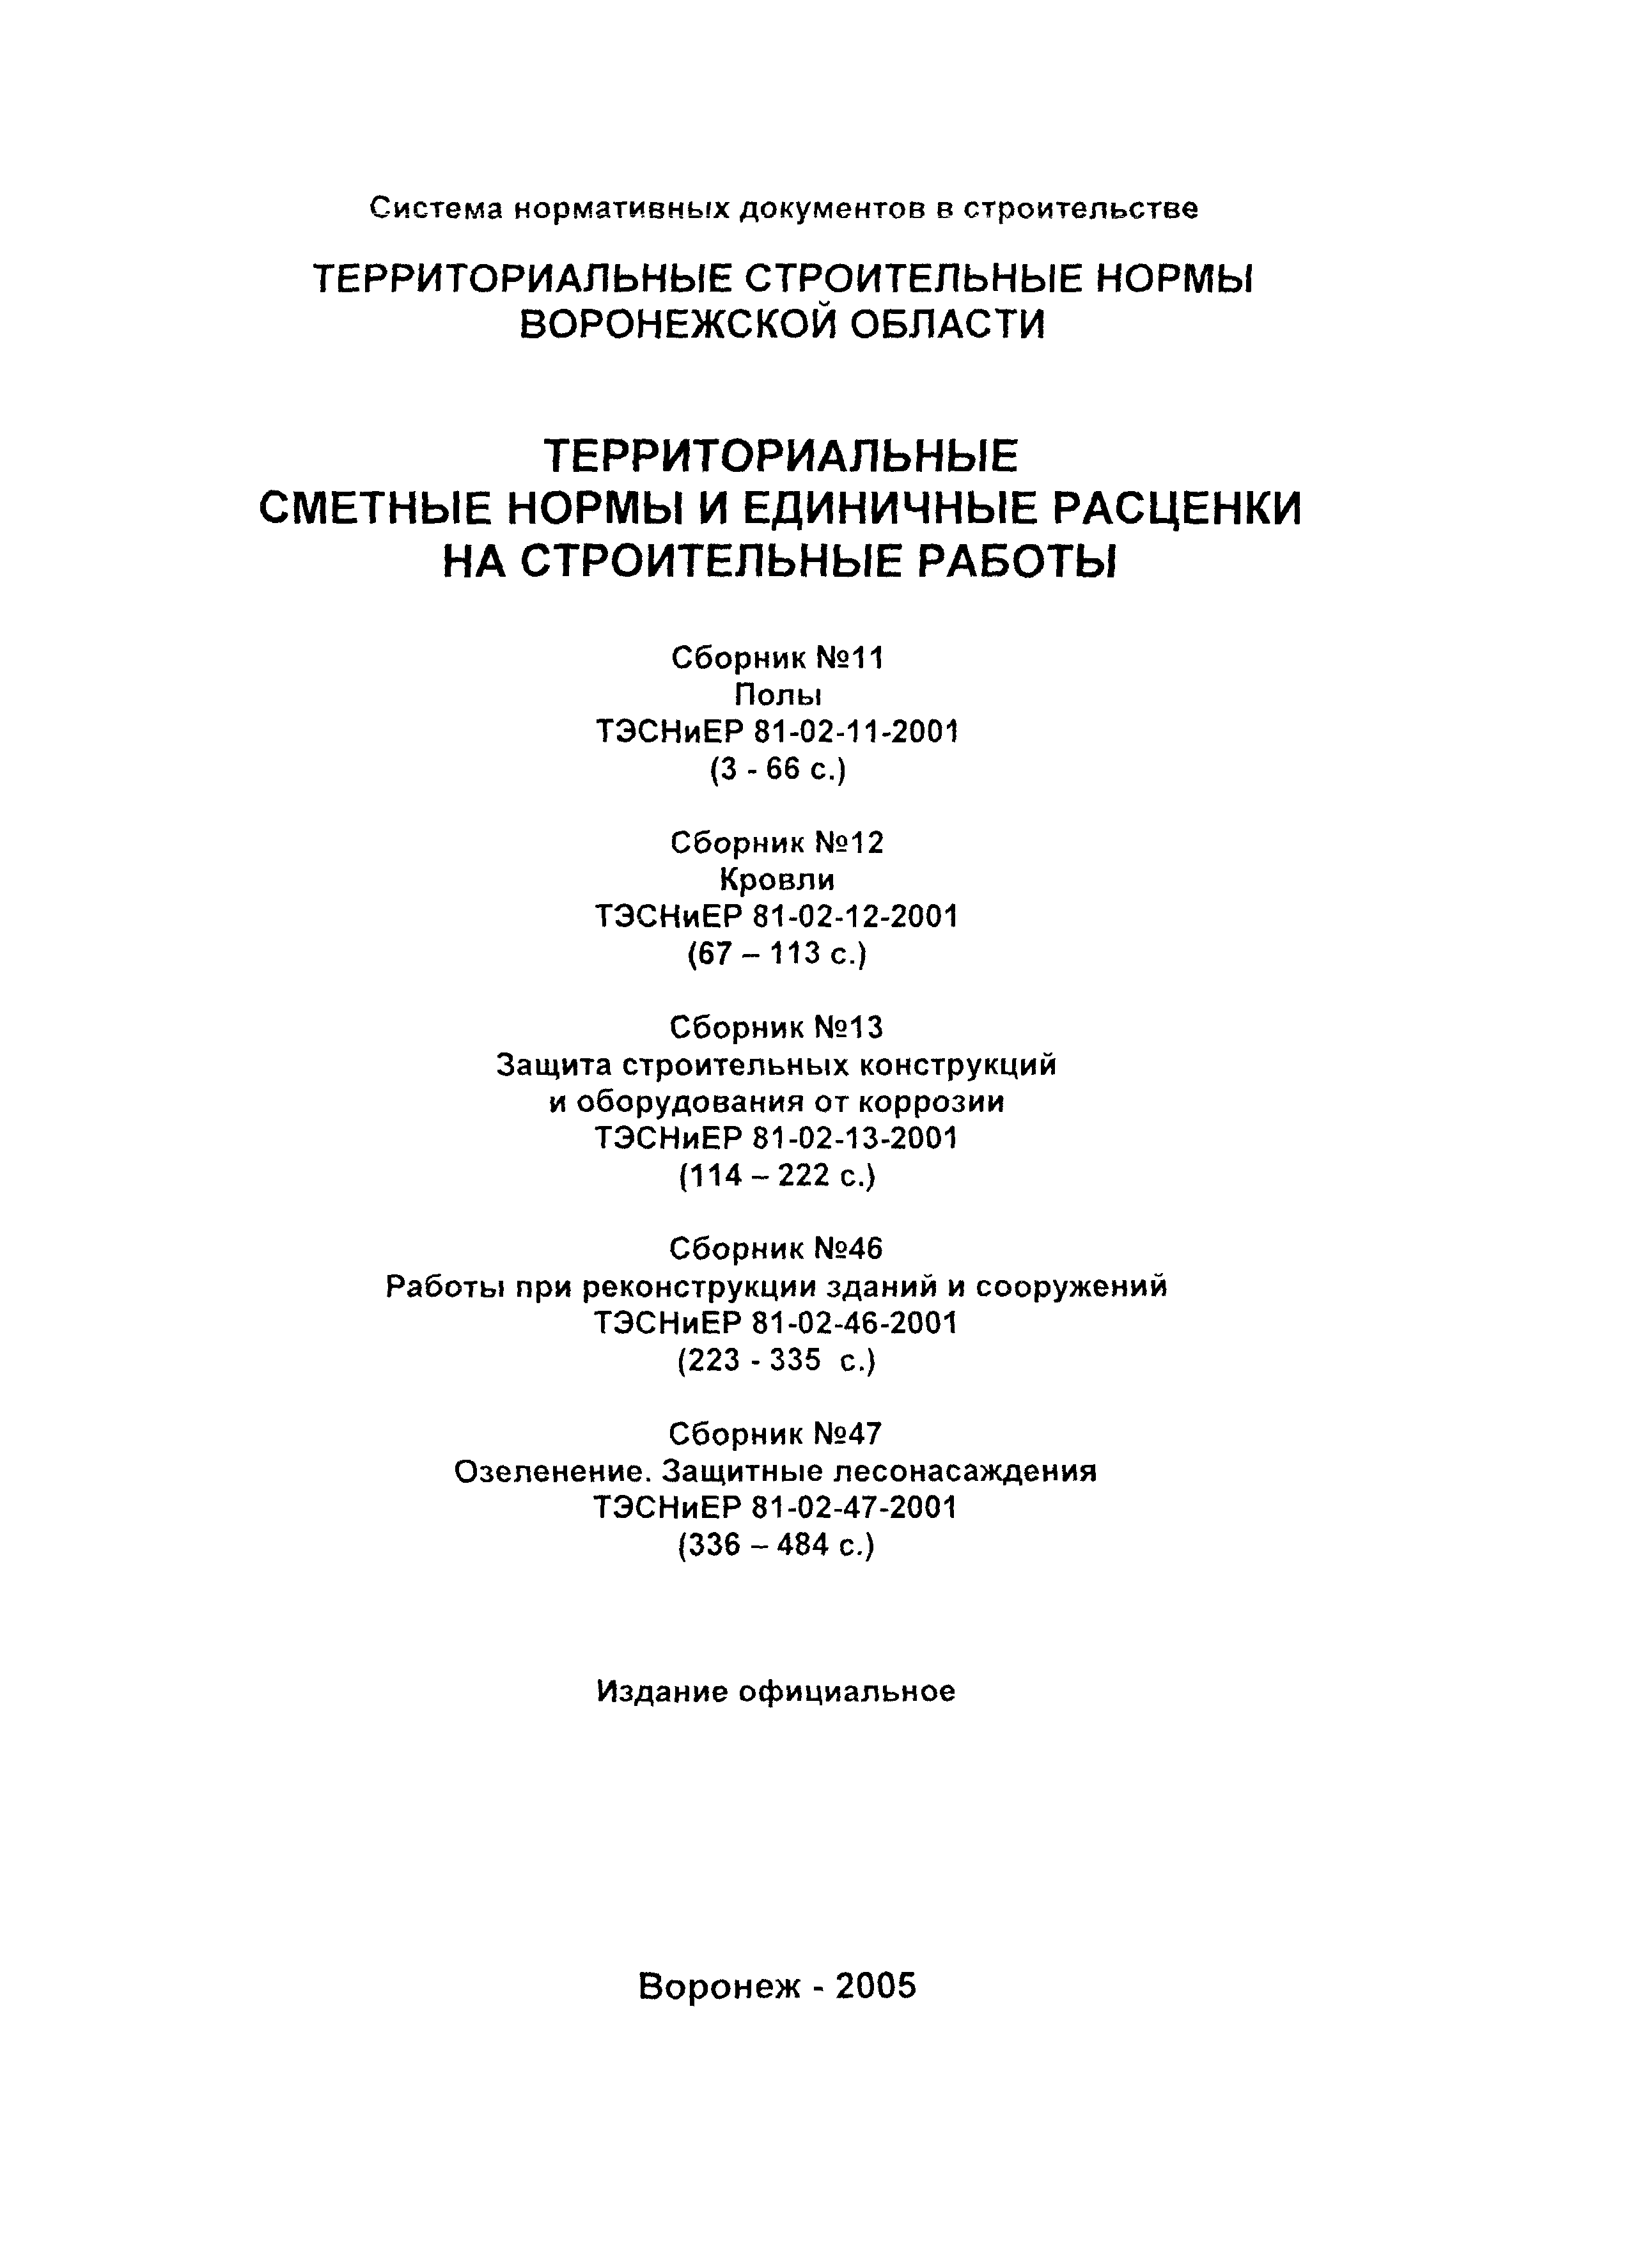 ТЭСНиЕР Воронежской области 81-02-46-2001